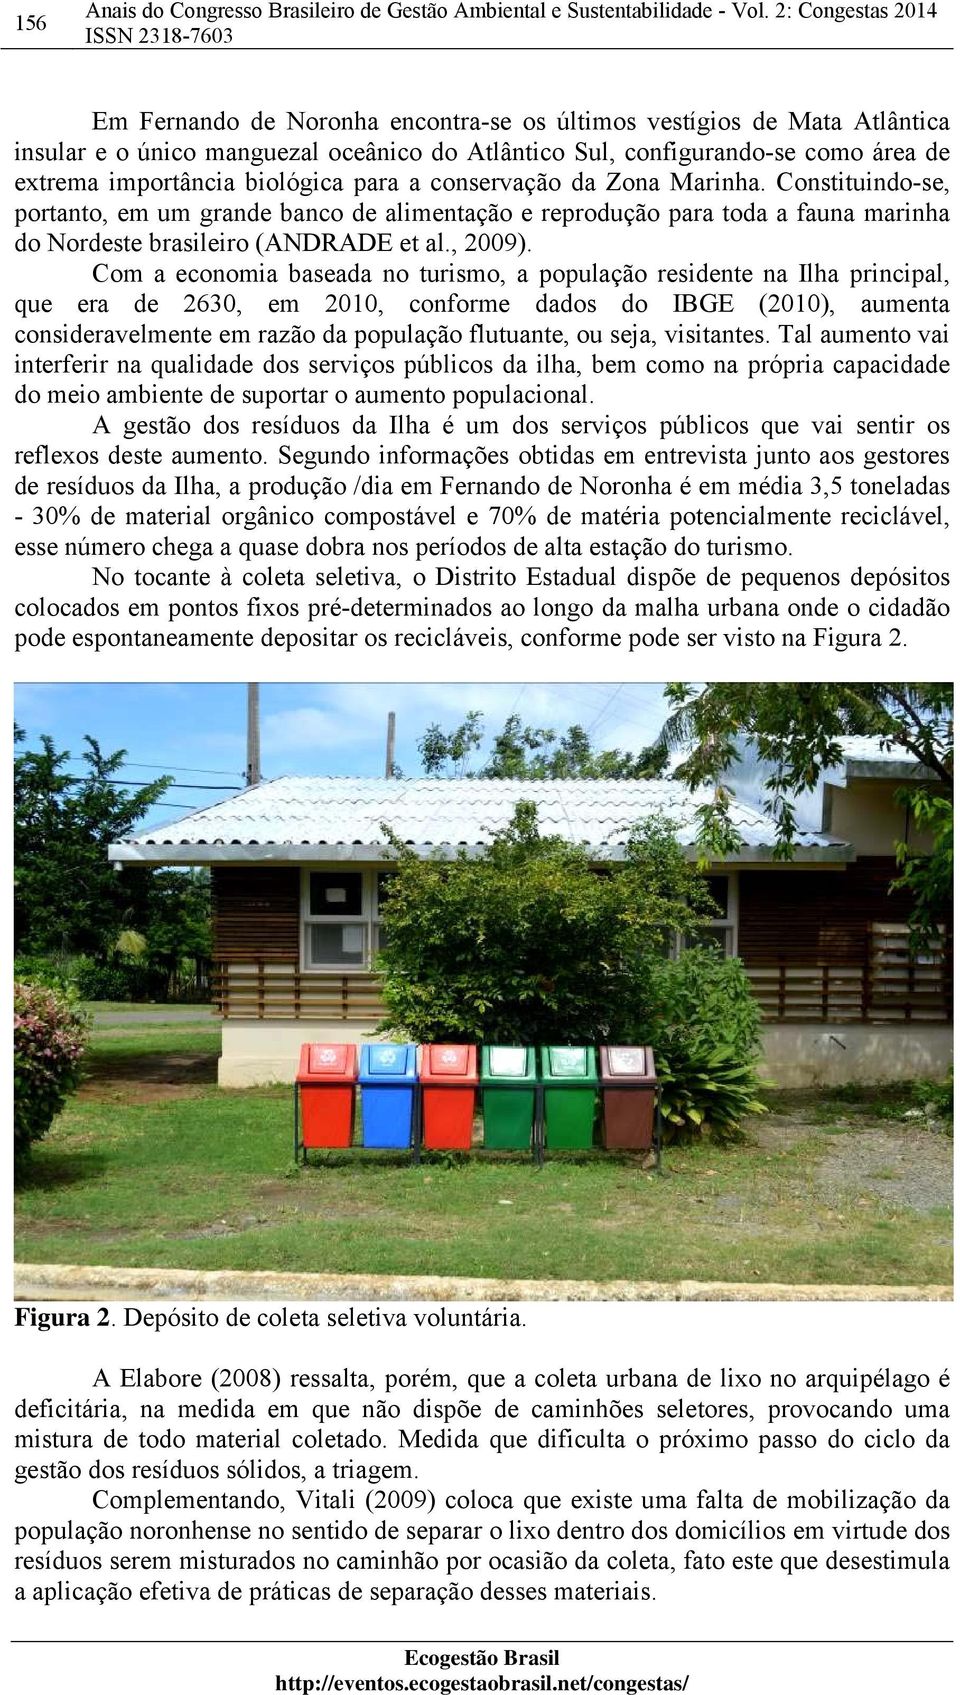 biológica para a conservação da Zona Marinha. Constituindo-se, portanto, em um grande banco de alimentação e reprodução para toda a fauna marinha do Nordeste brasileiro (ANDRADE et al., 2009).